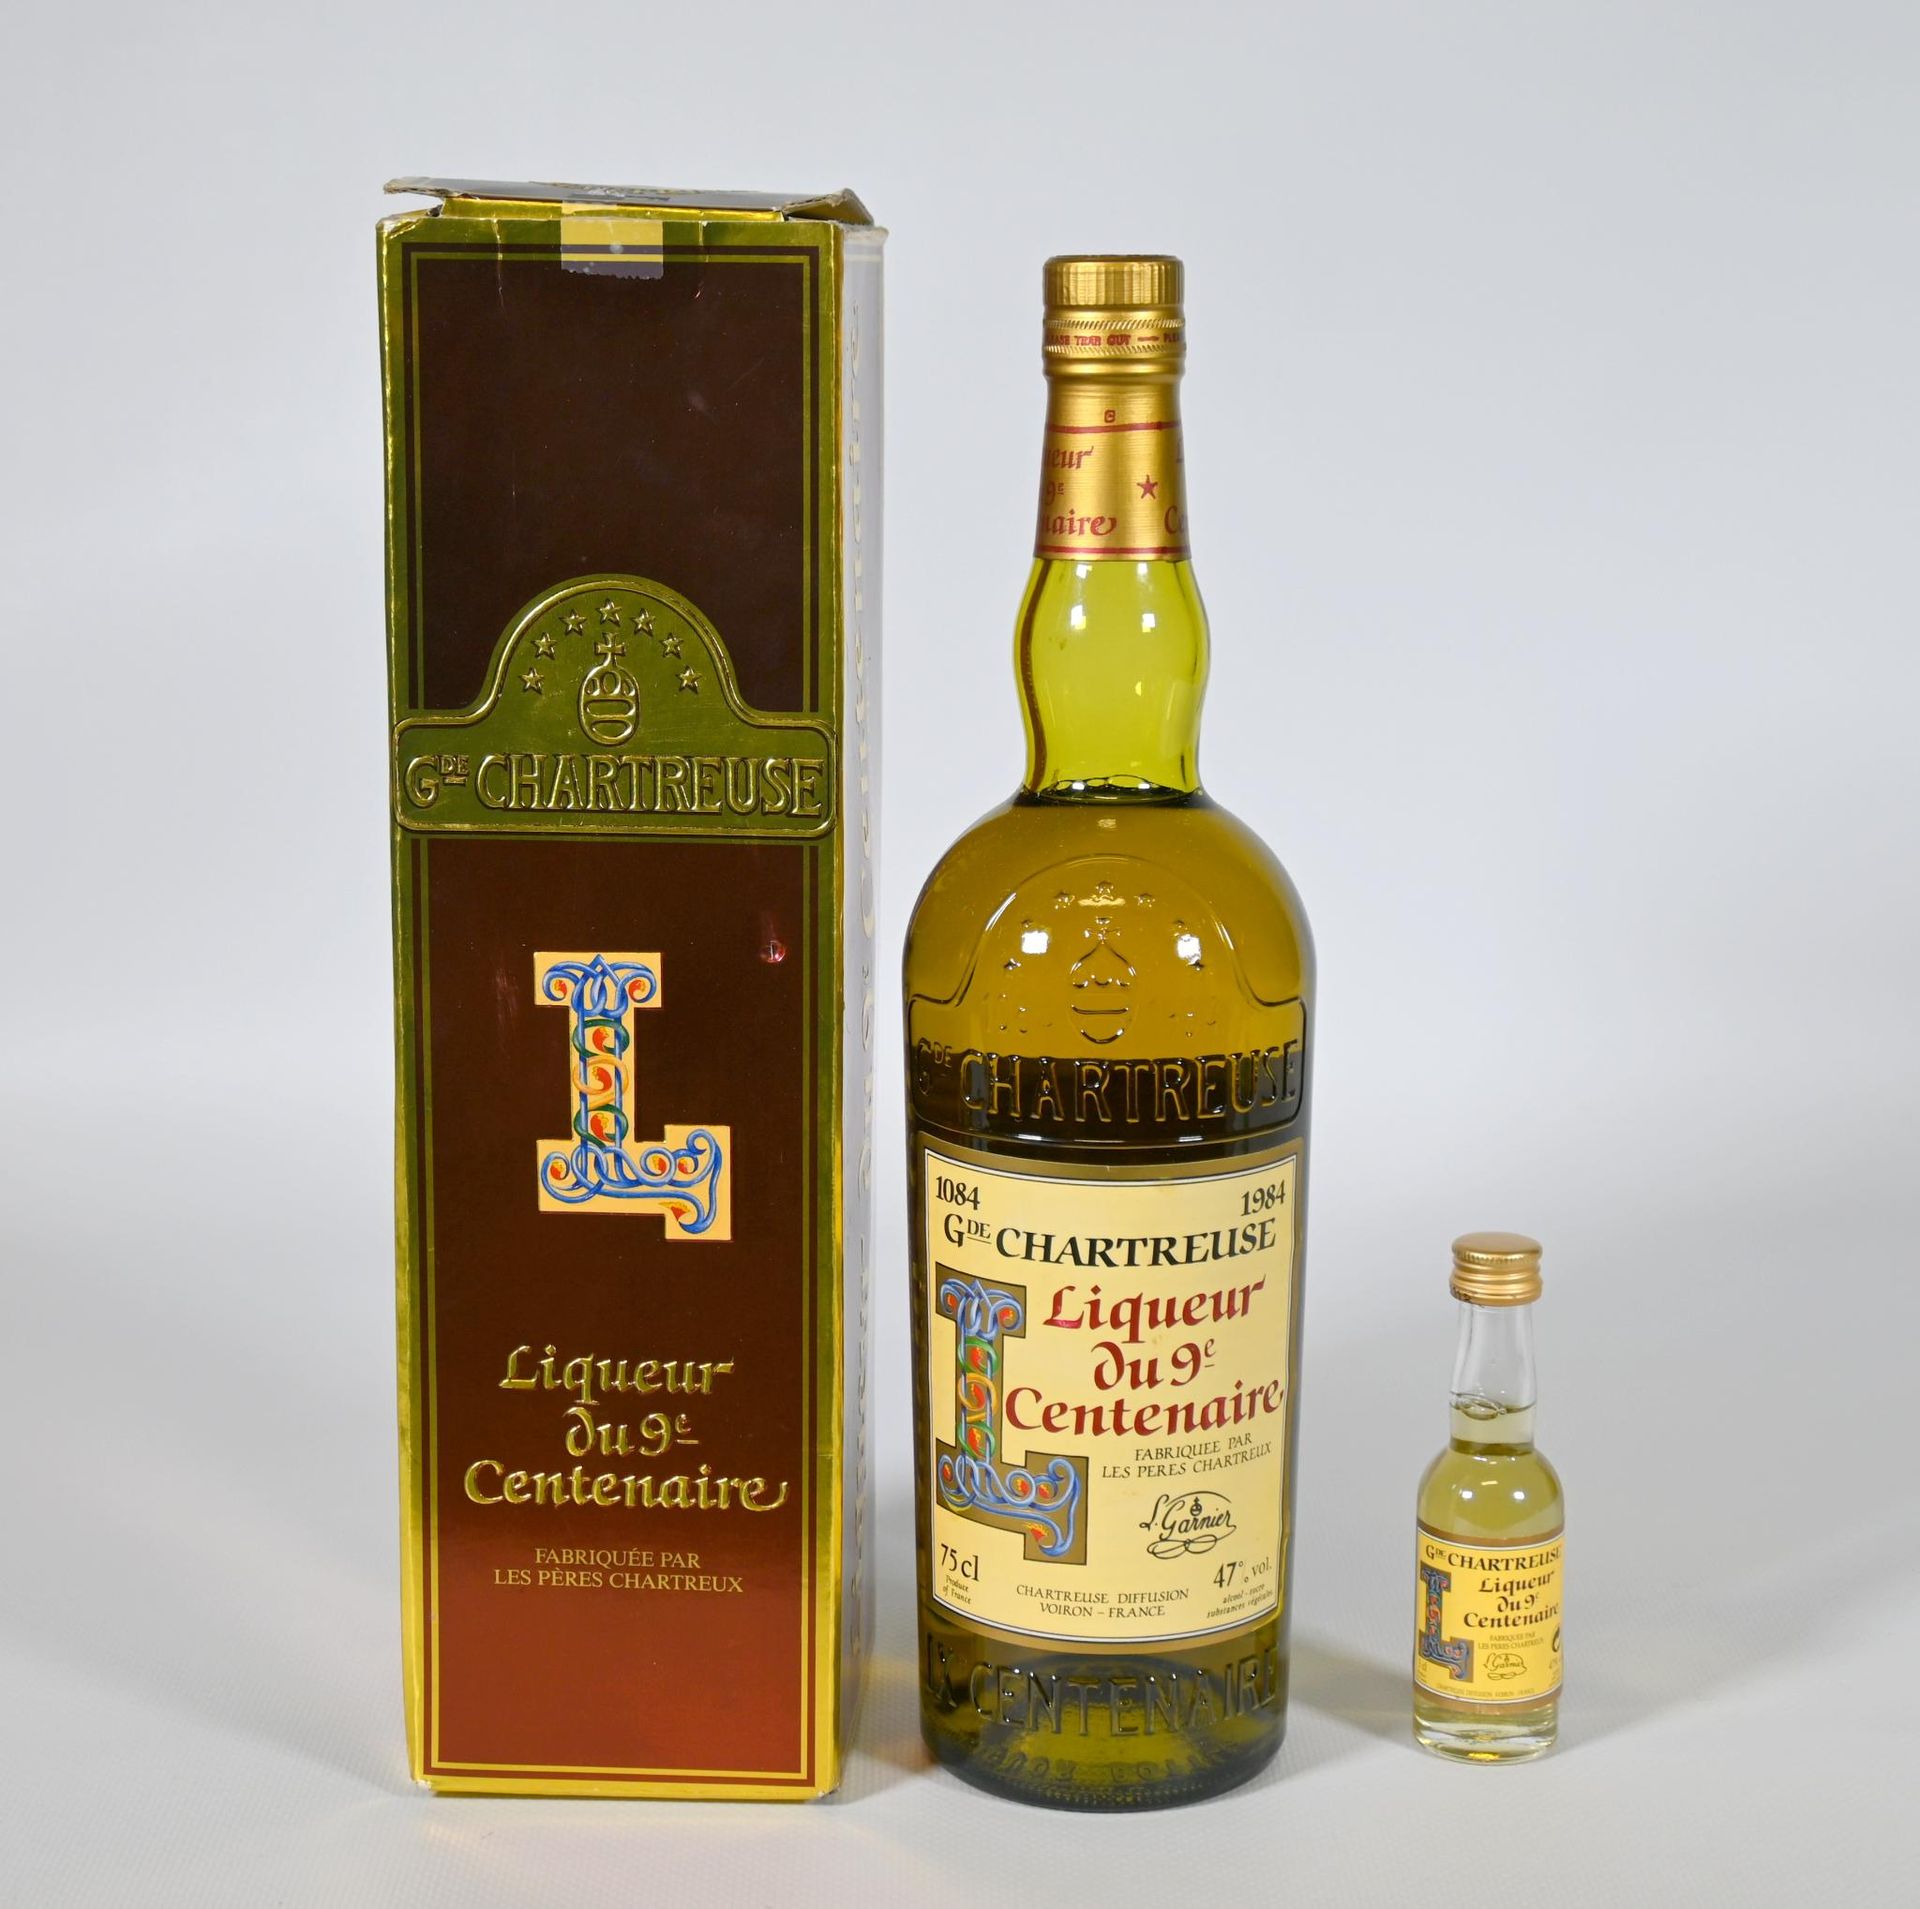 Null (x1) 75 cl 瓶装 Grande chartreuse liqueur du 9ème centenaire 1984 n° 57836，包装&hellip;